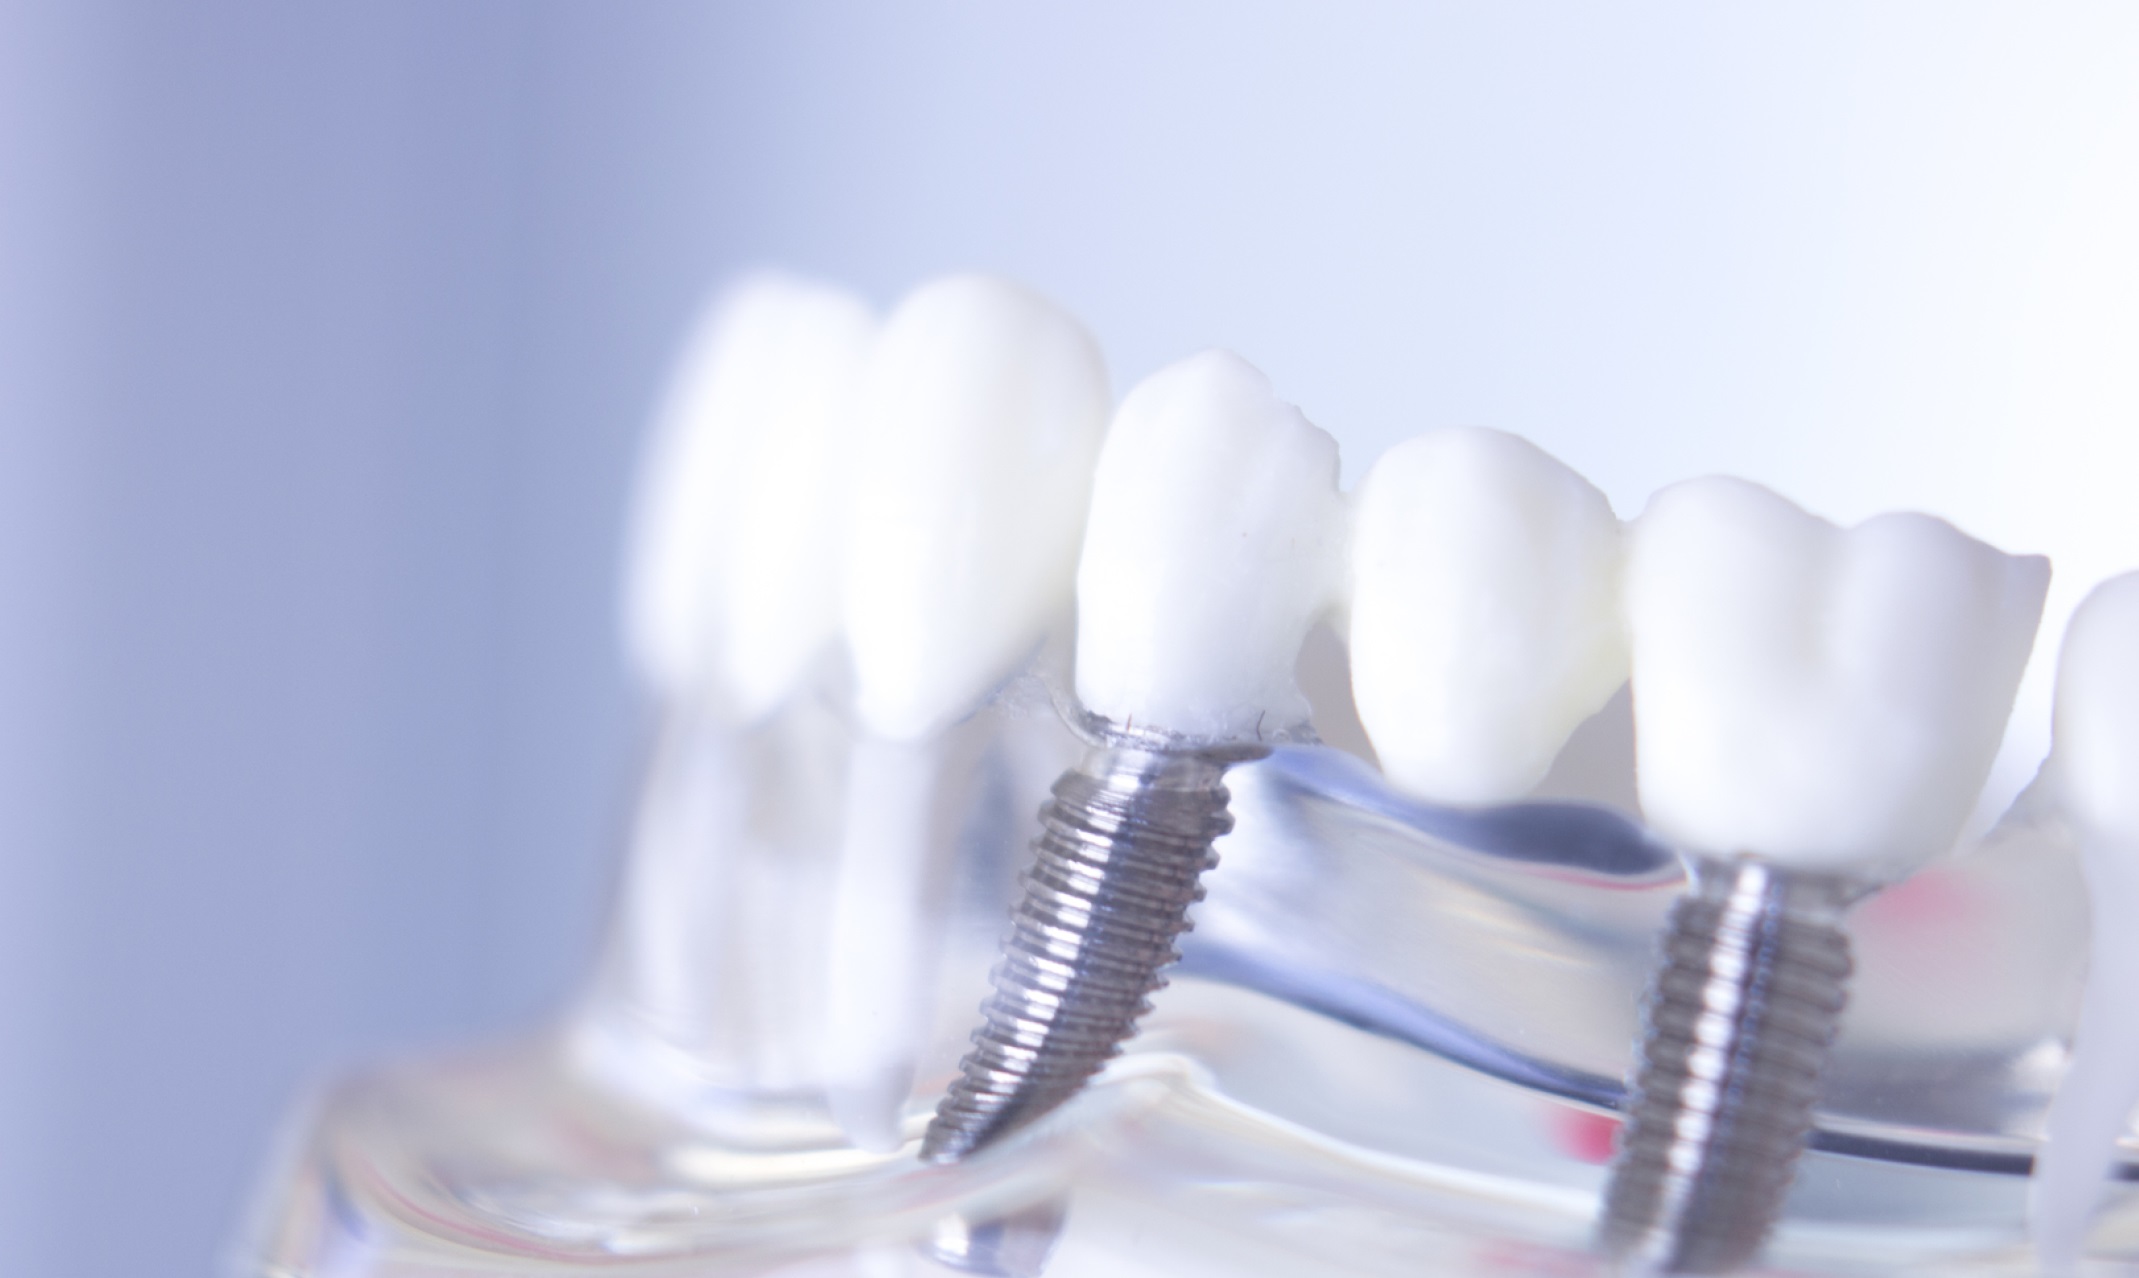 protesis dental en carabanchel - dientes